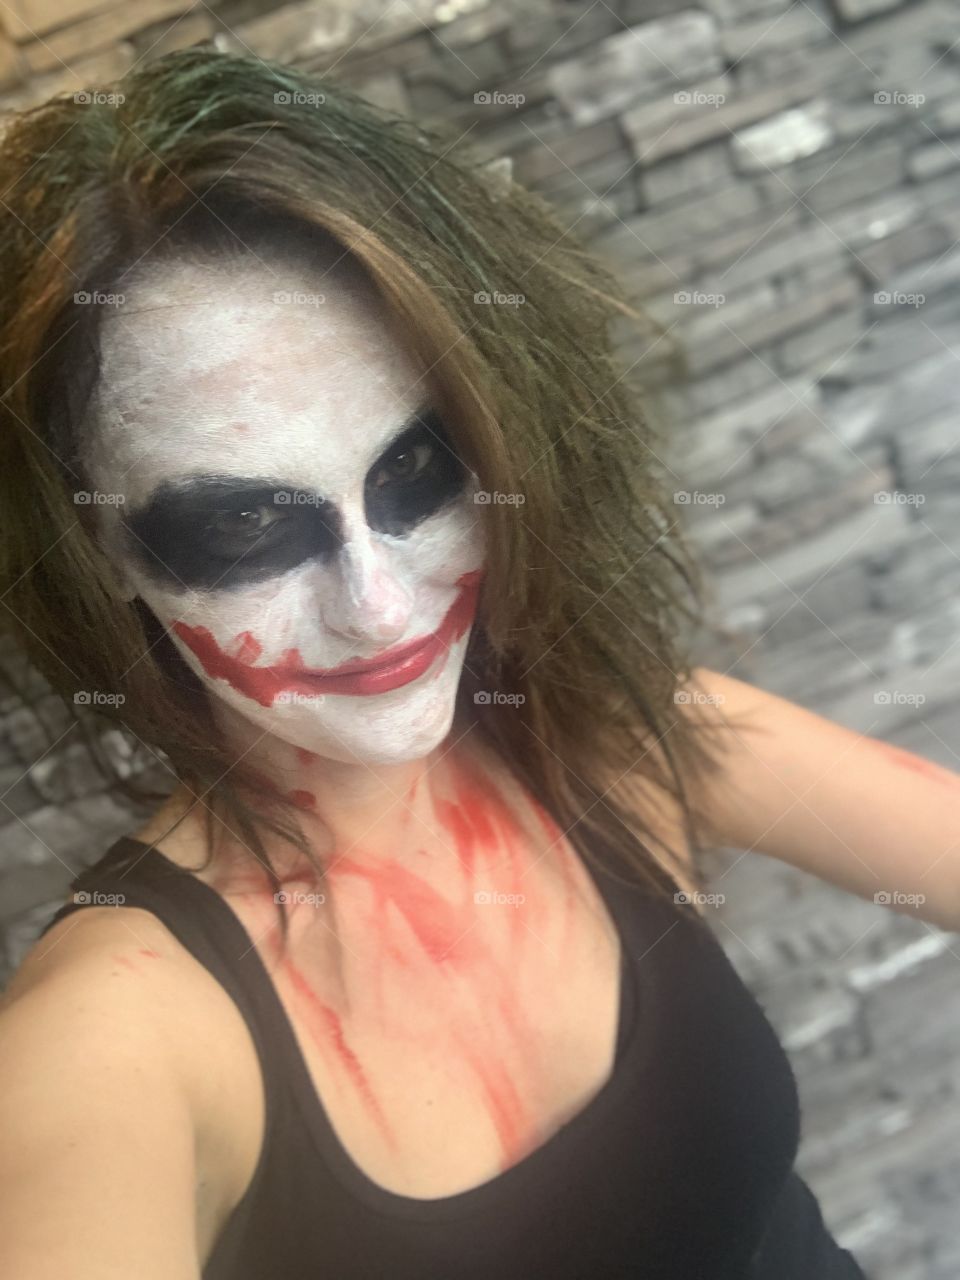 Happy Halloween from the Joker